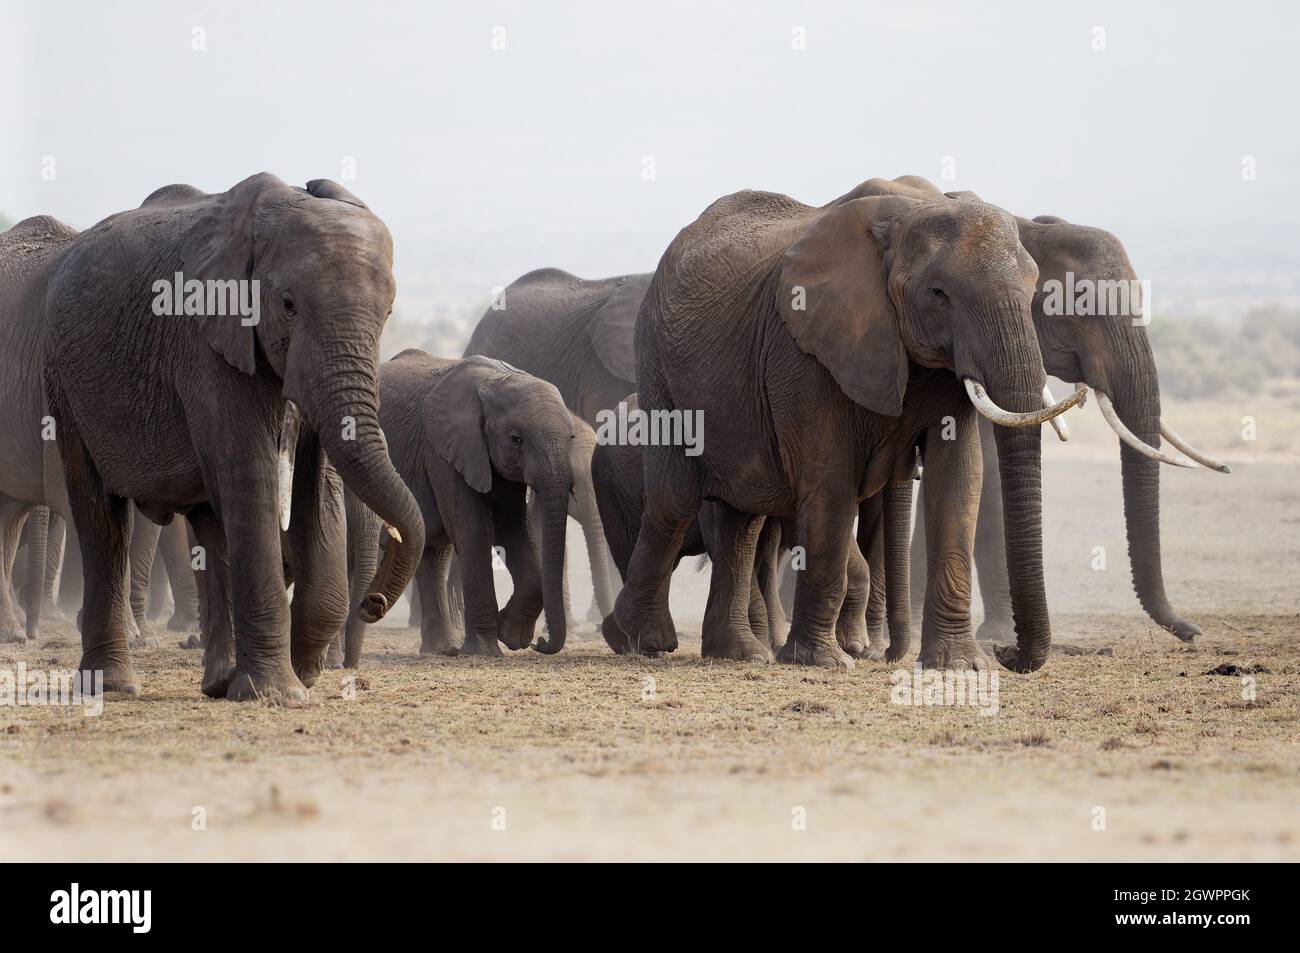 African Bush Elephant - Loxodonta africana grande mandria di elefanti con cubetti che camminano in polverosa savana secca, contrasto vicino al quadro bianco e nero, KE Foto Stock